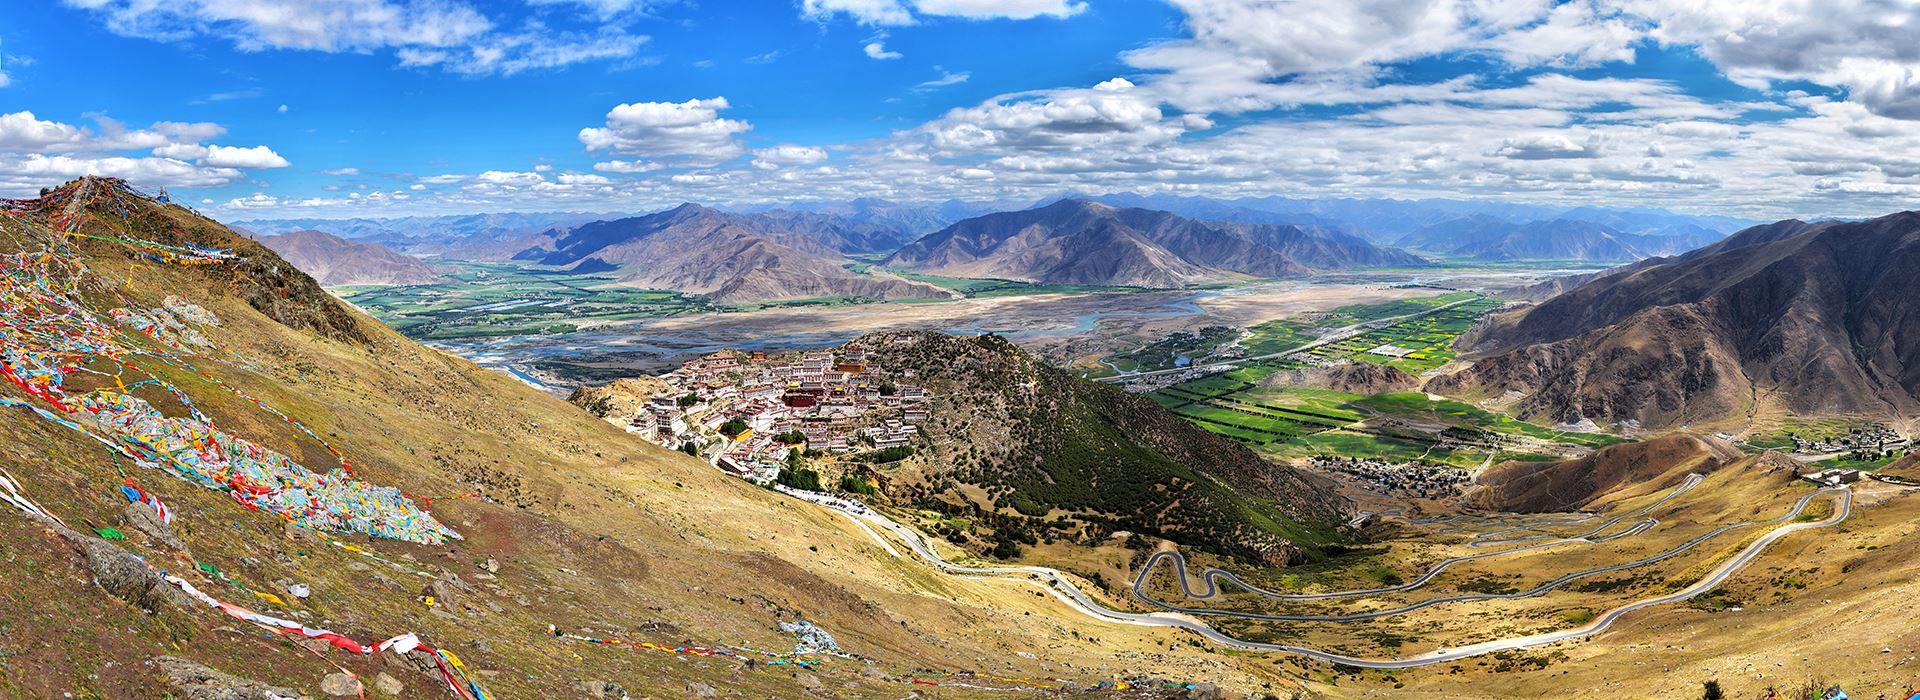 Viaggio via Terra dallo Yunnan attraverso il Tibet al Nepal con l'Everest